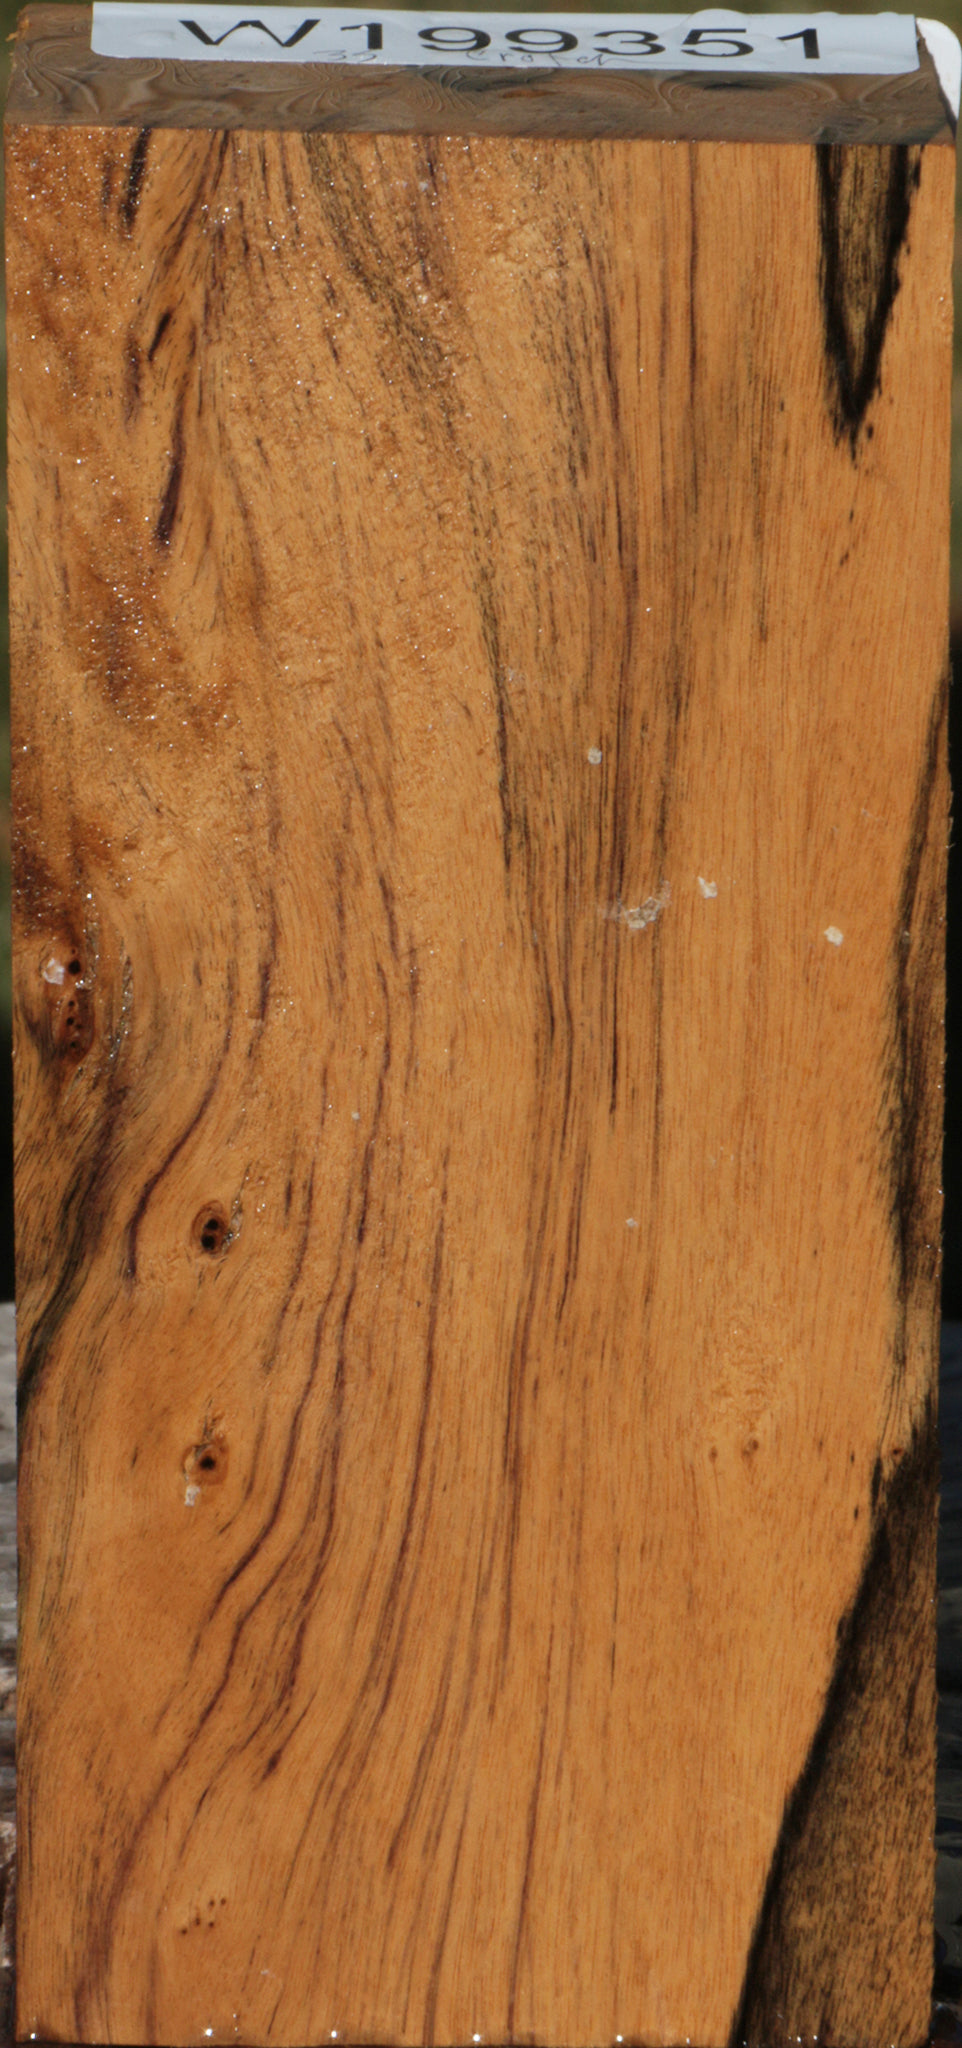 Crotchwood Black & White Ebony Lumber